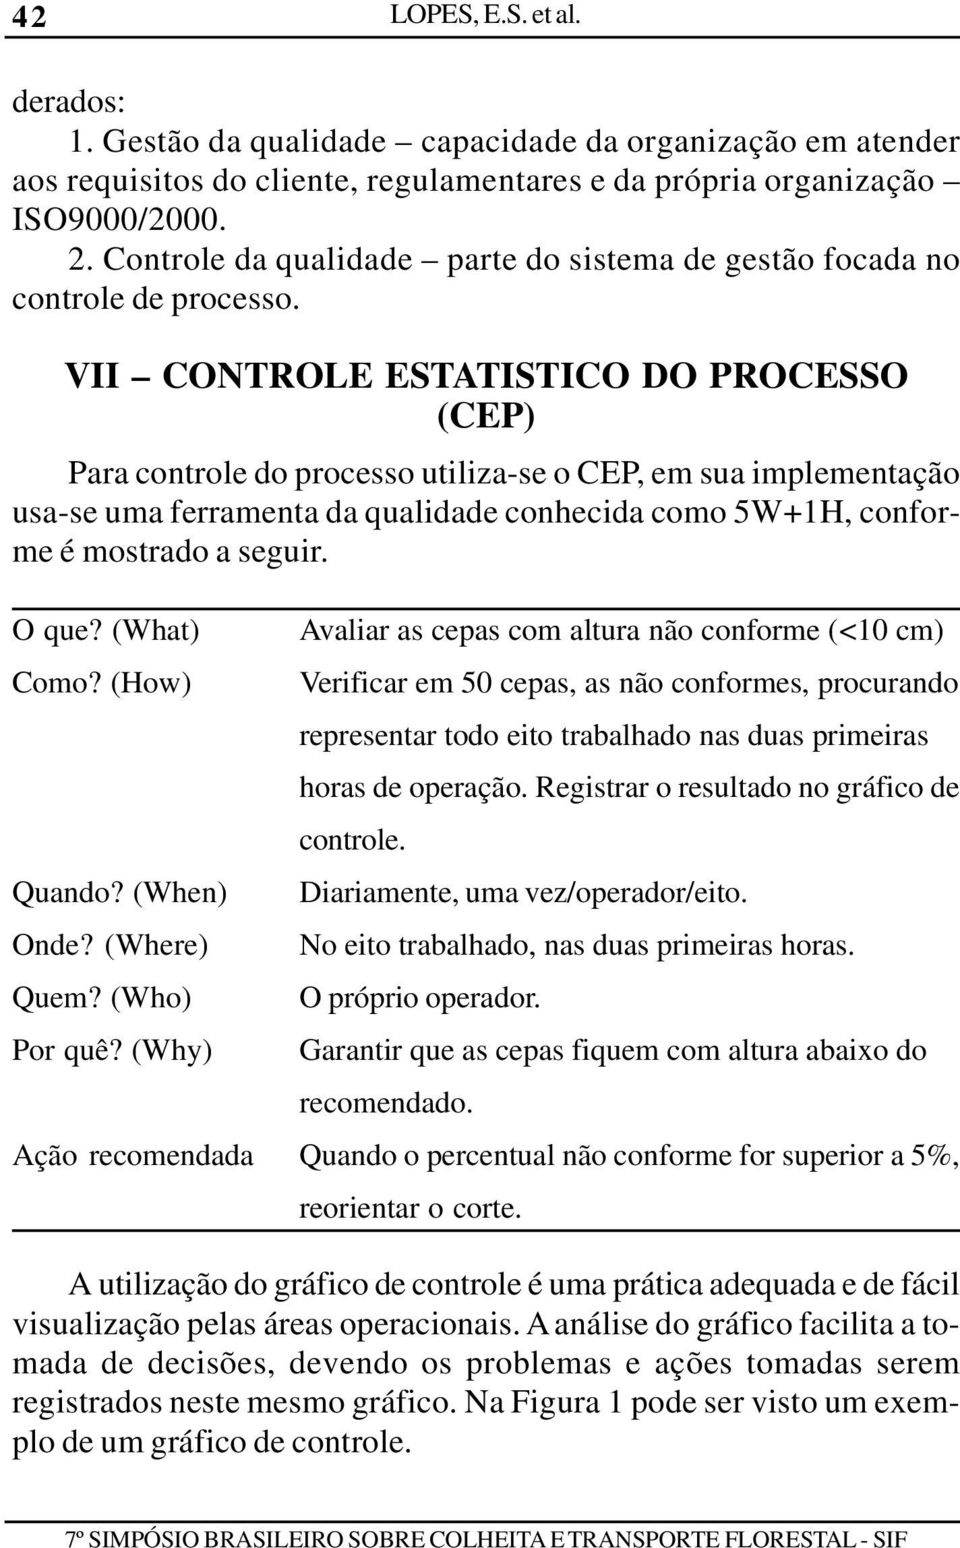 VII CONTROLE ESTATISTICO DO PROCESSO (CEP) Para controle do processo utiliza-se o CEP, em sua implementação usa-se uma ferramenta da qualidade conhecida como 5W+1H, conforme é mostrado a seguir.